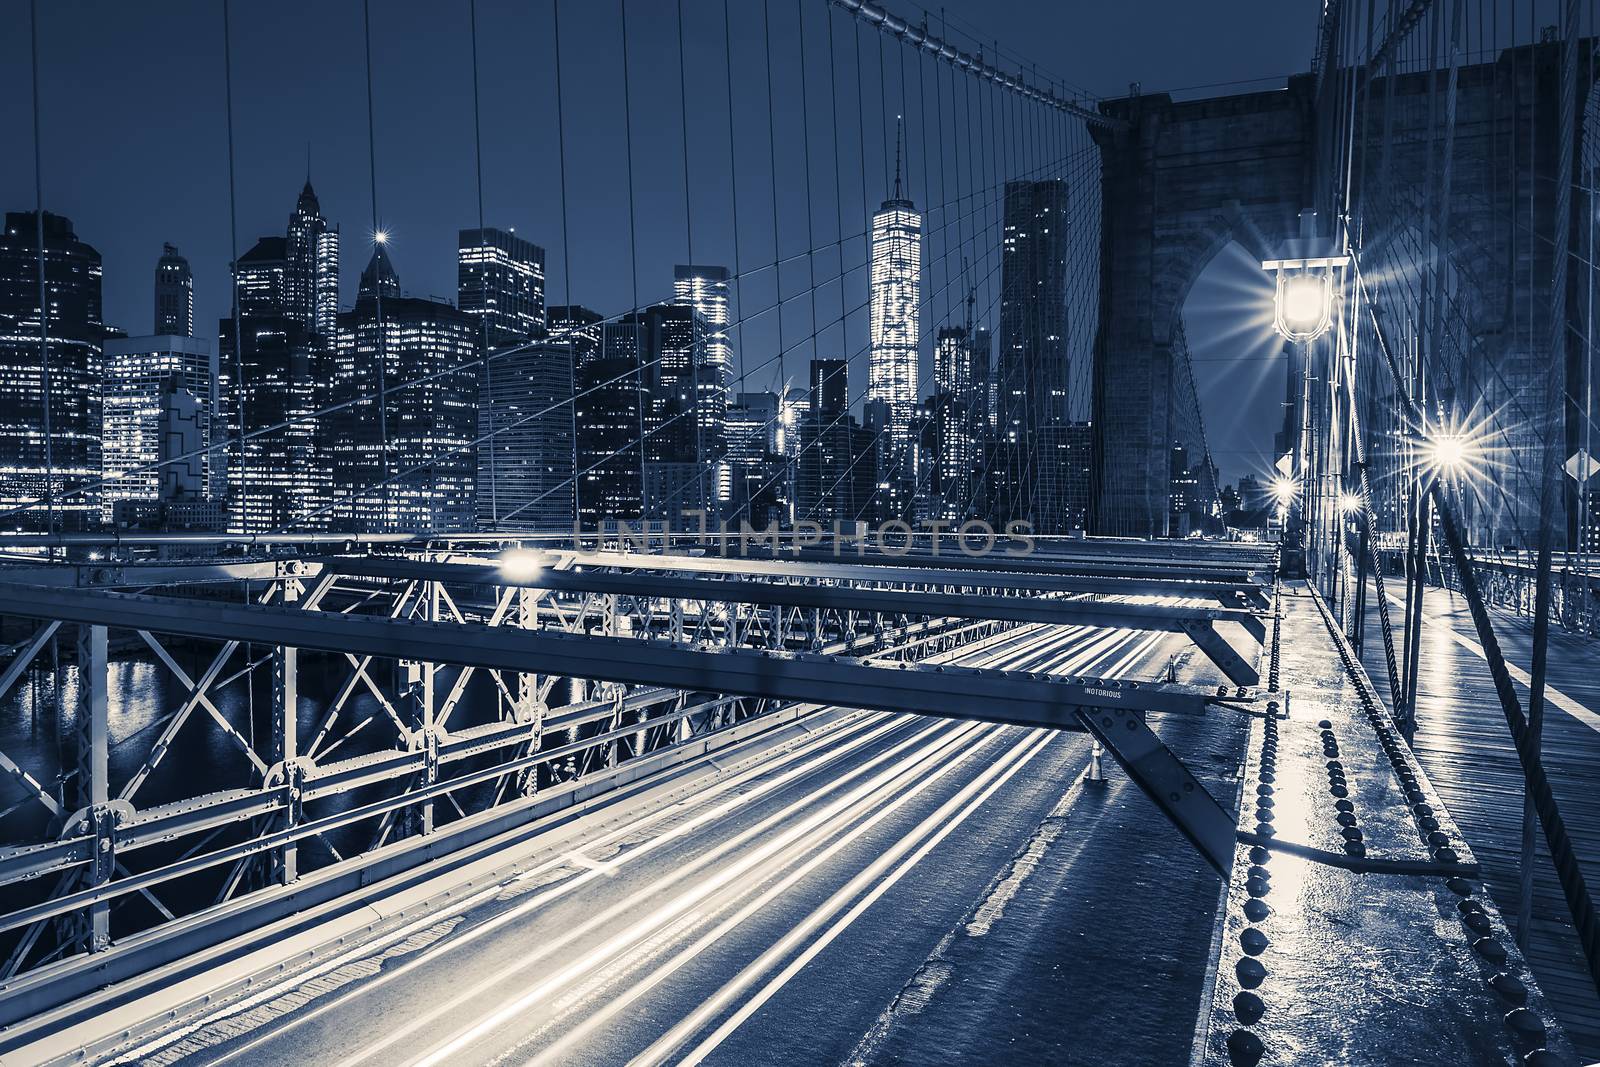 Brooklyn Bridge at night by vwalakte